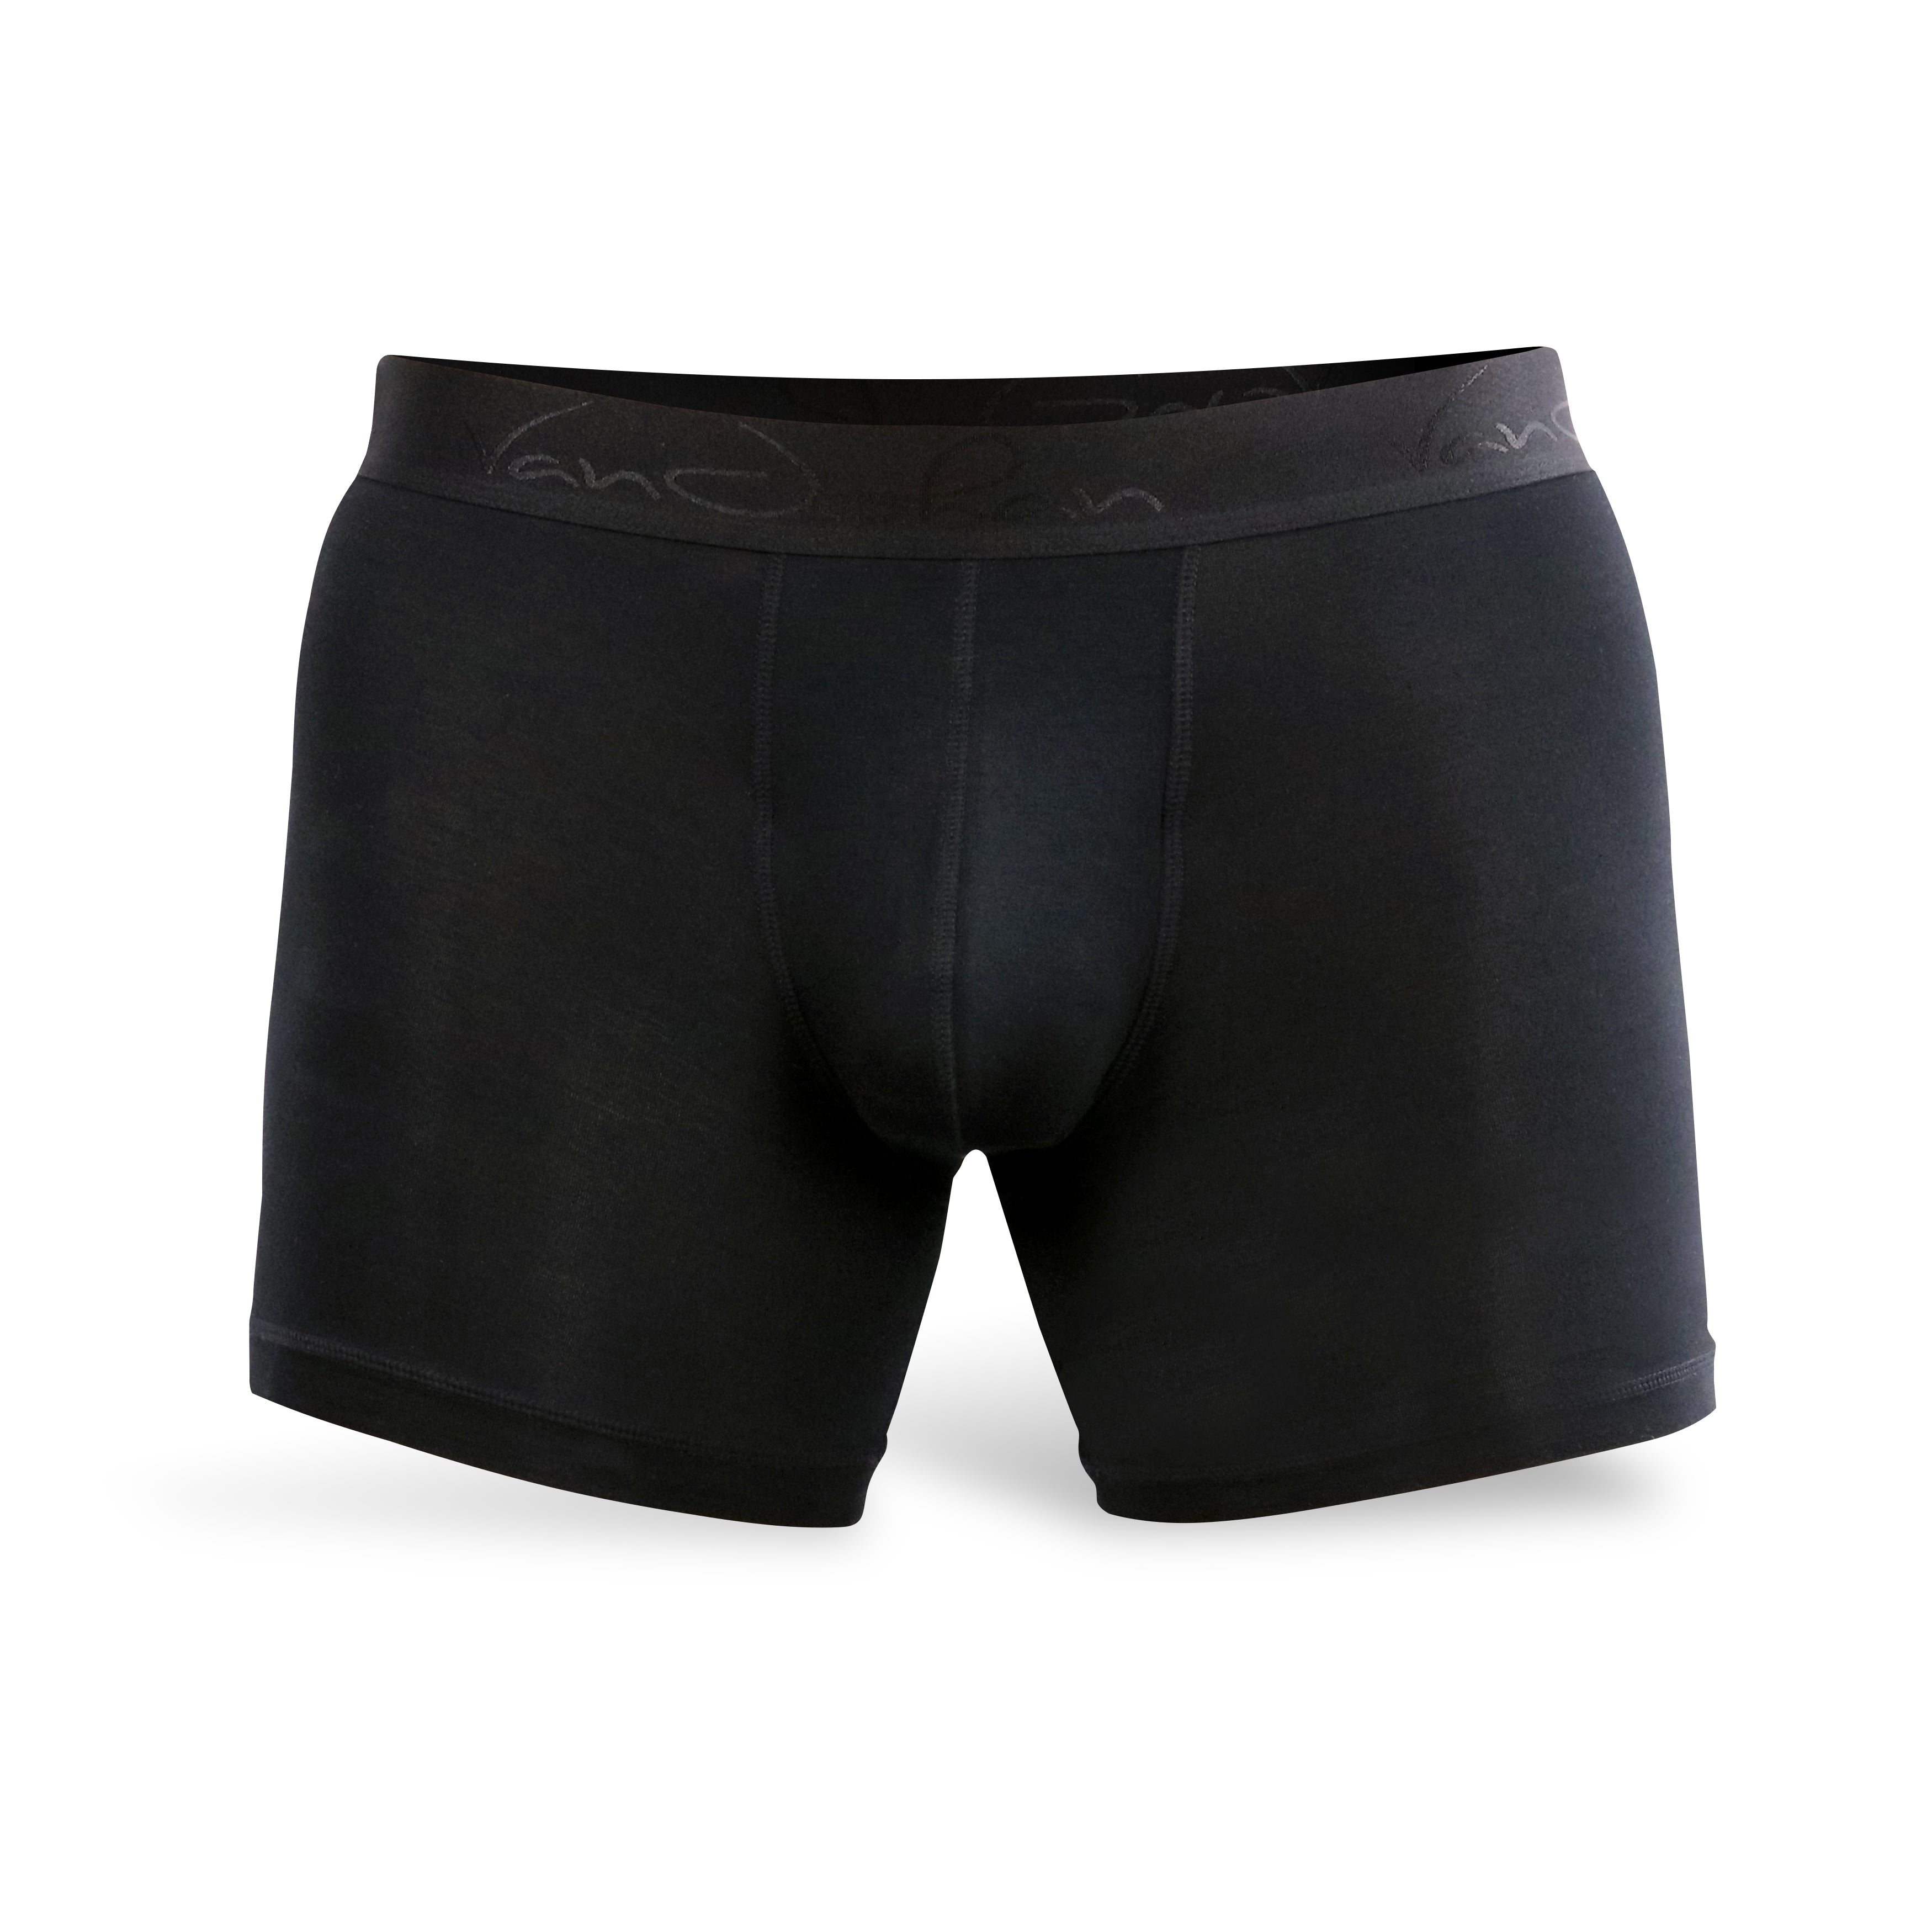 Buy 3 Get 1 Free Onyx Black  Best Mens Underwear for Ball Support –  VanJohan Underwear